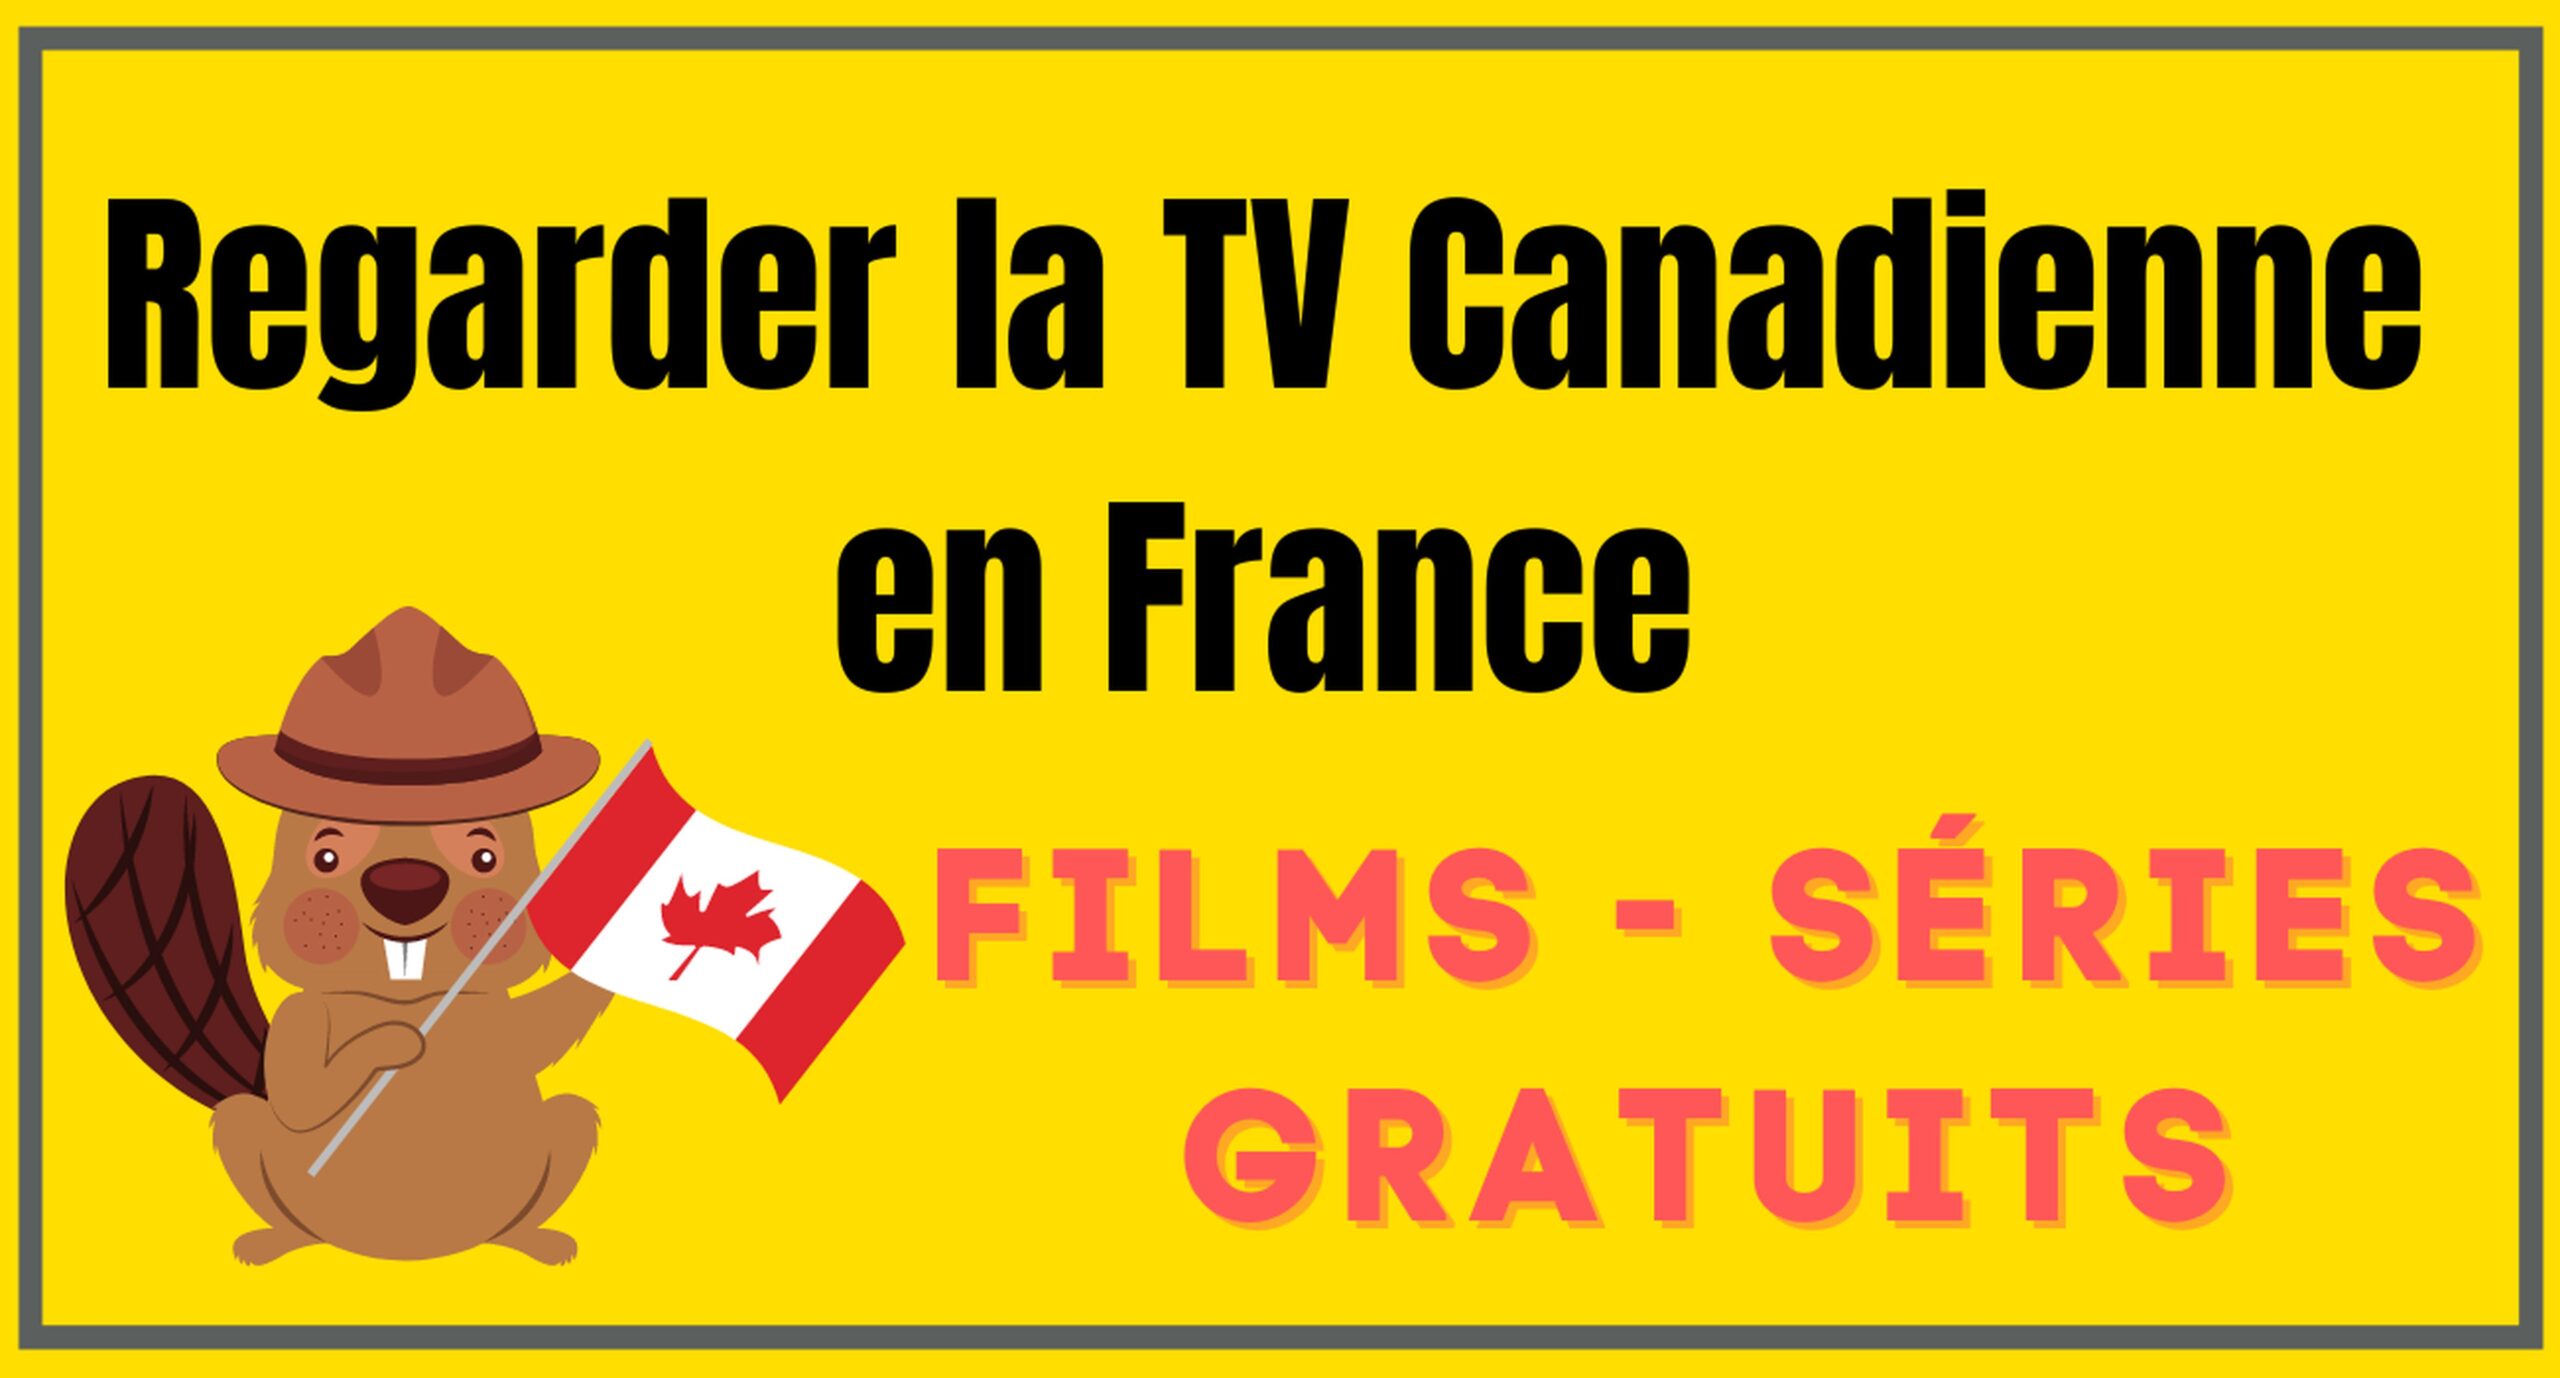 Regarder la télévision canadienne en France 6